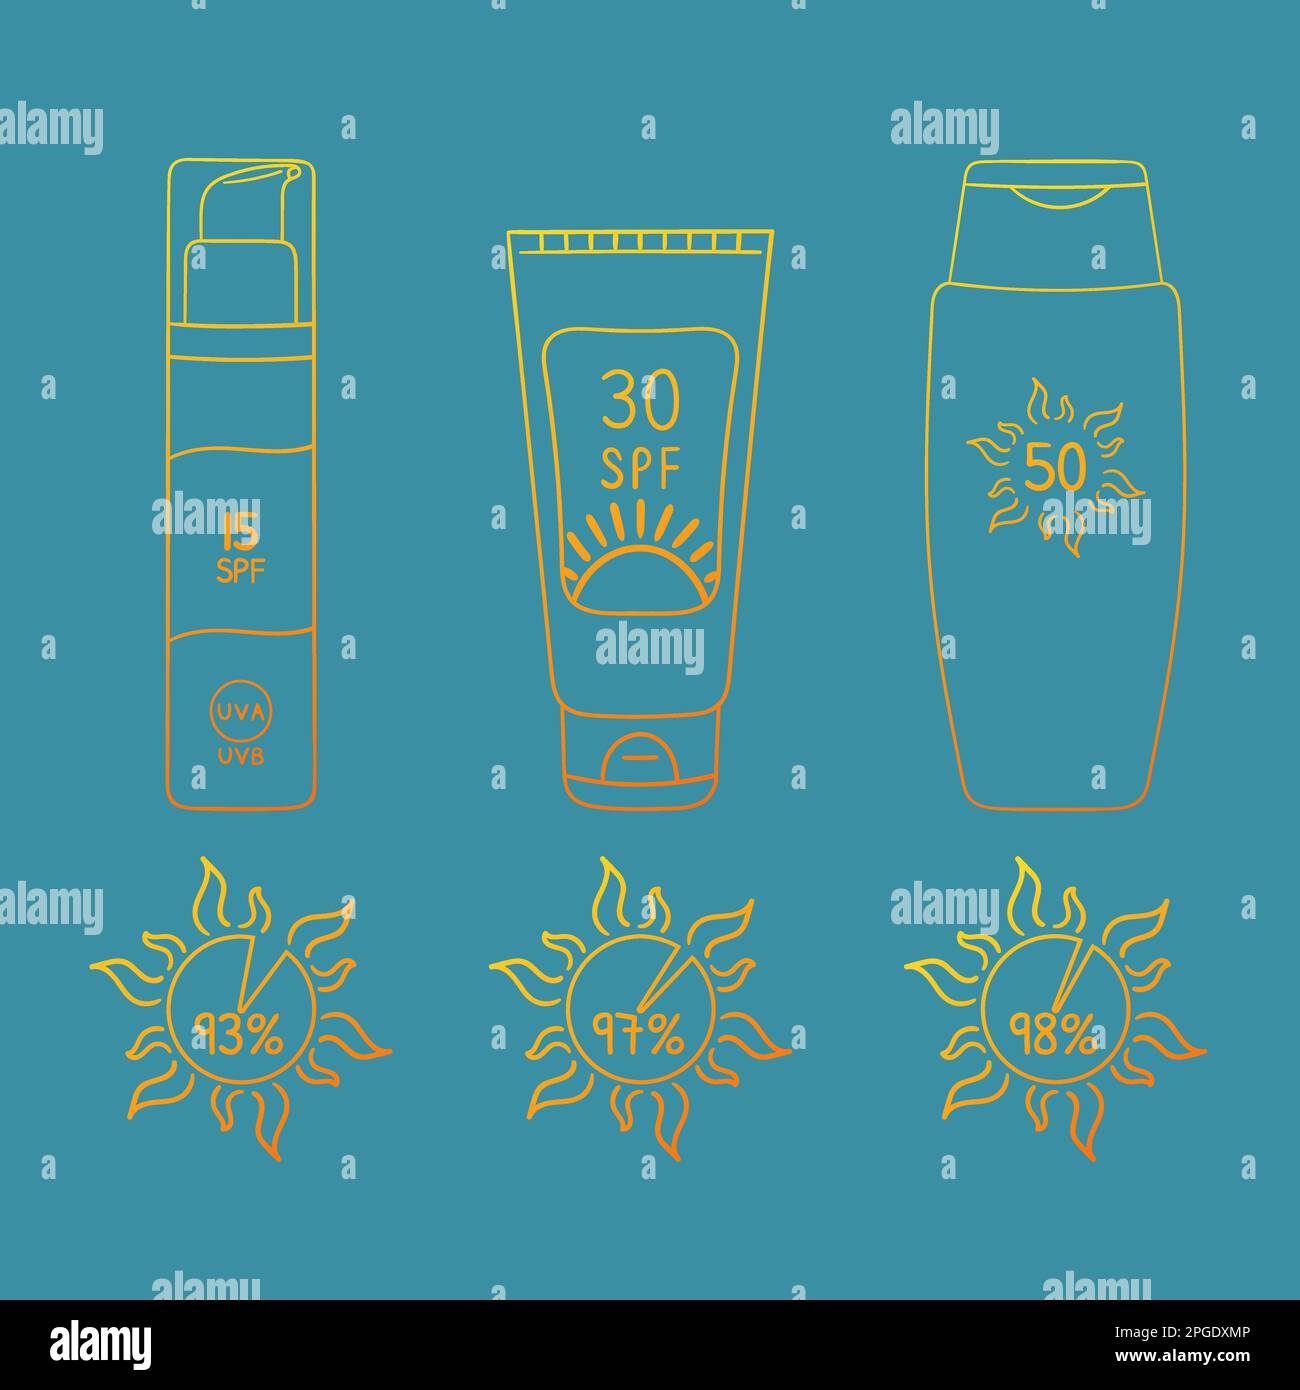 Set aus Sonnenschutzflaschen, Röhrchen mit unterschiedlichem LSF von 15 bis 50 ml. Infografik Umfang des SPF-Schutzes, der UVB-Strahlen blockiert. Sonnencreme, Lotion Stock Vektor